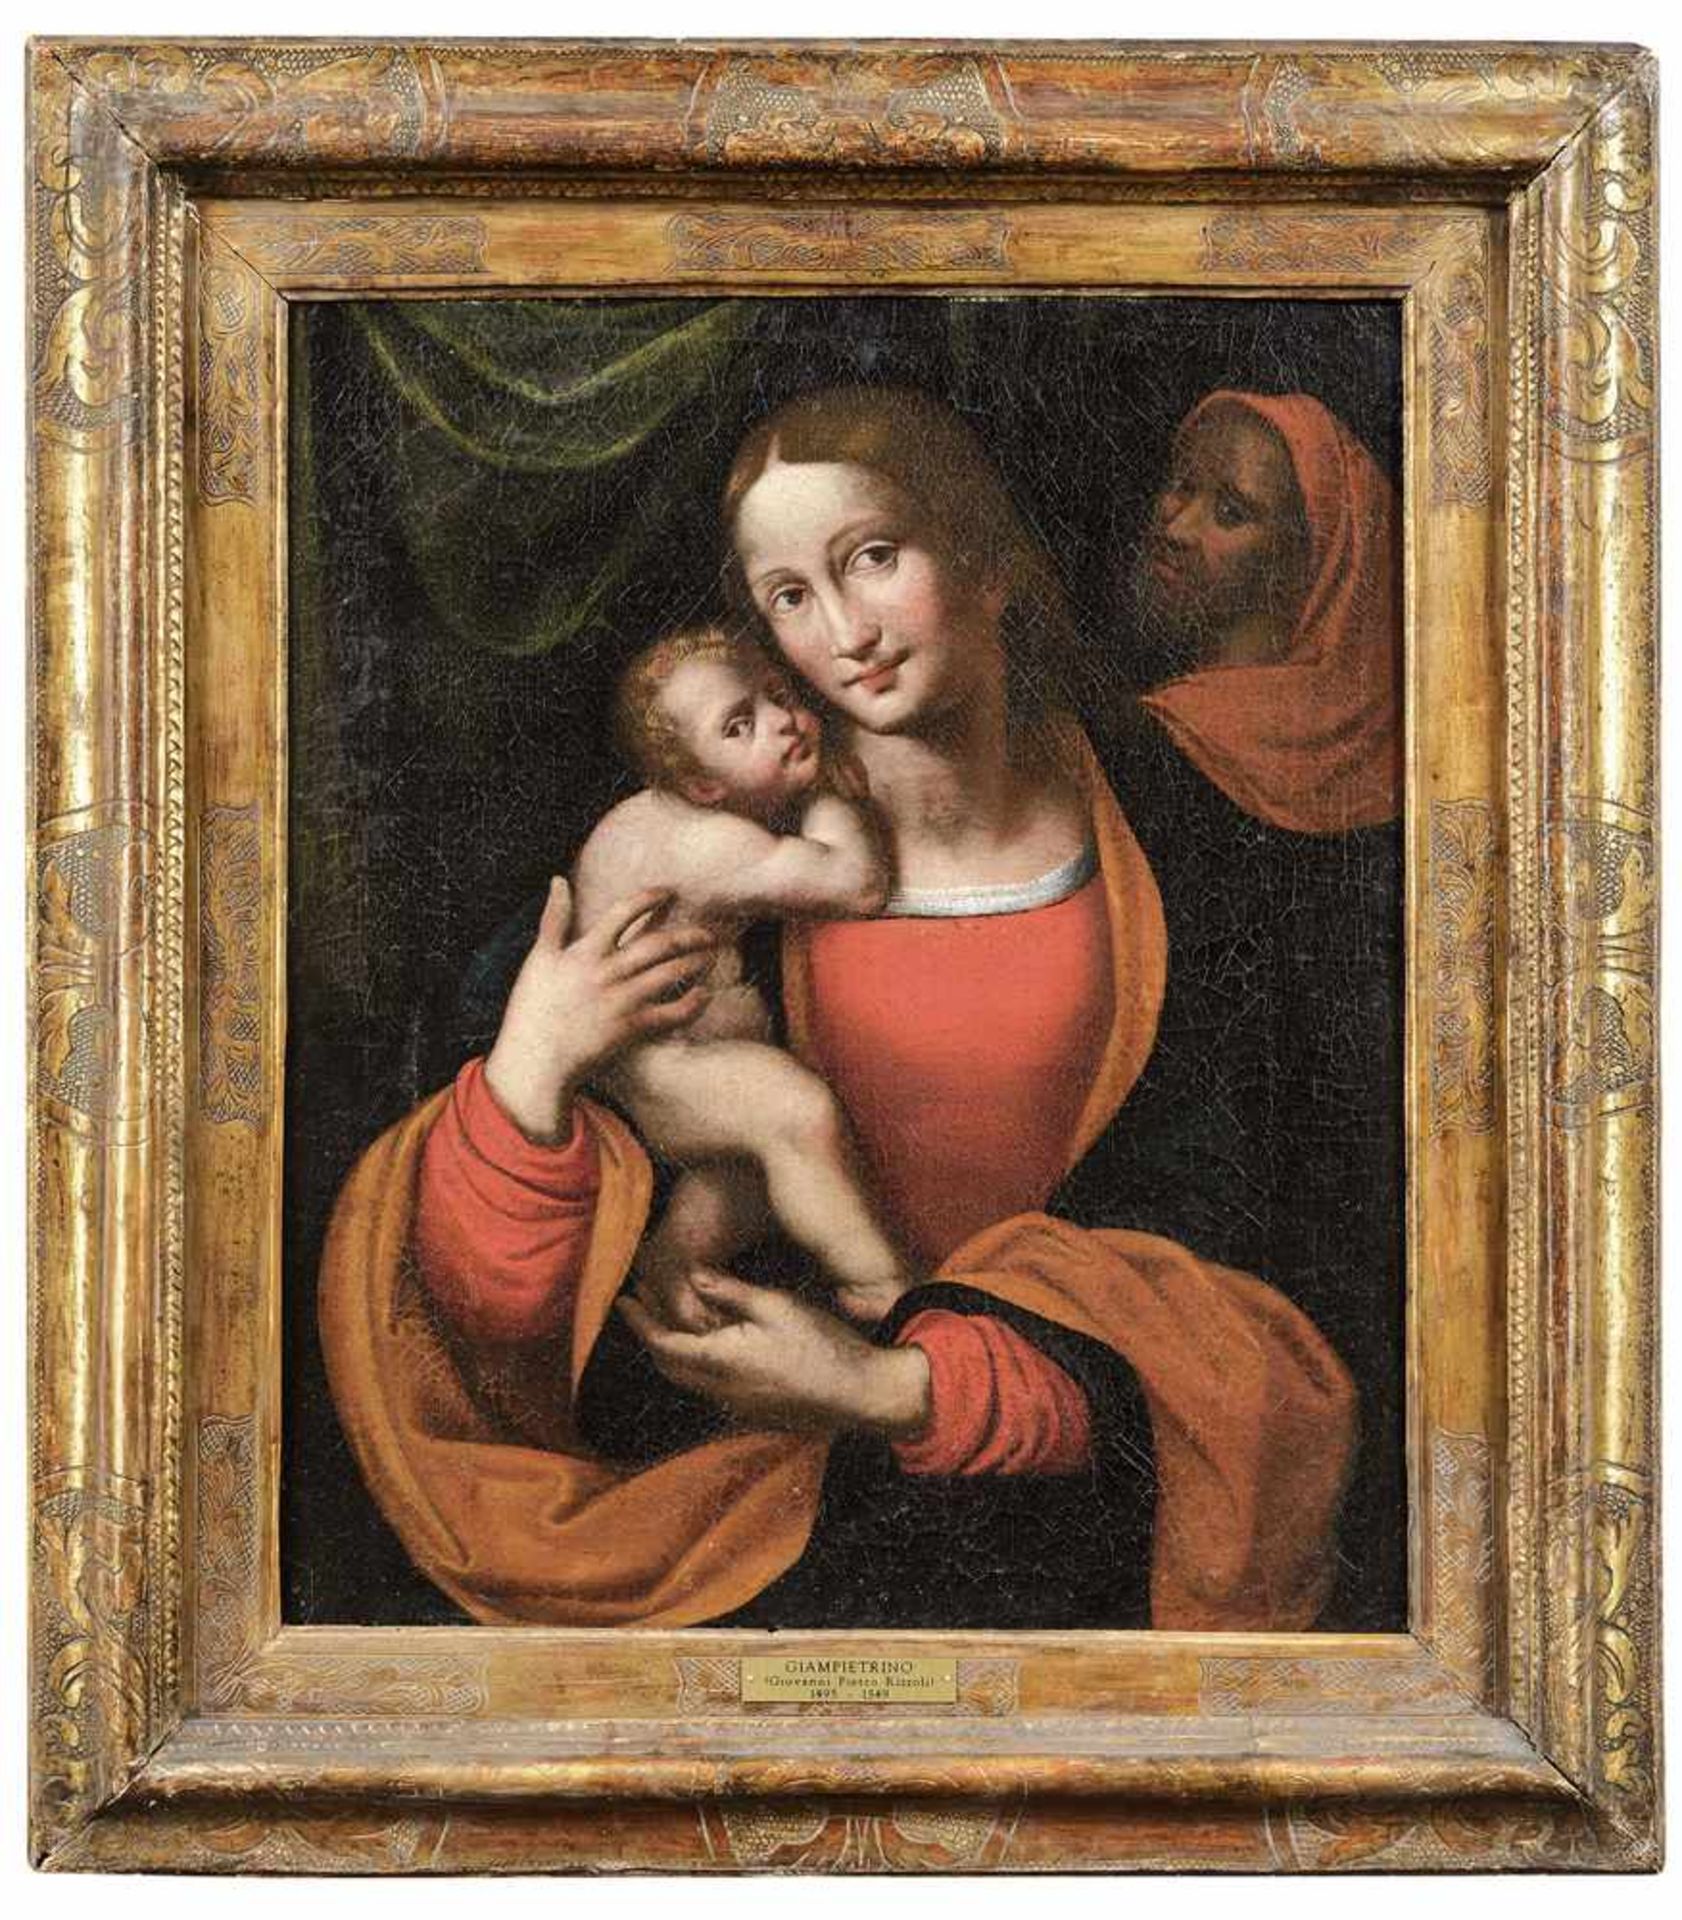 Rizzoli, Giovanni Pietro detto il Giampietrino (attr.)Um 1495 - 1549, tätig in Pavia und Mailand66 x